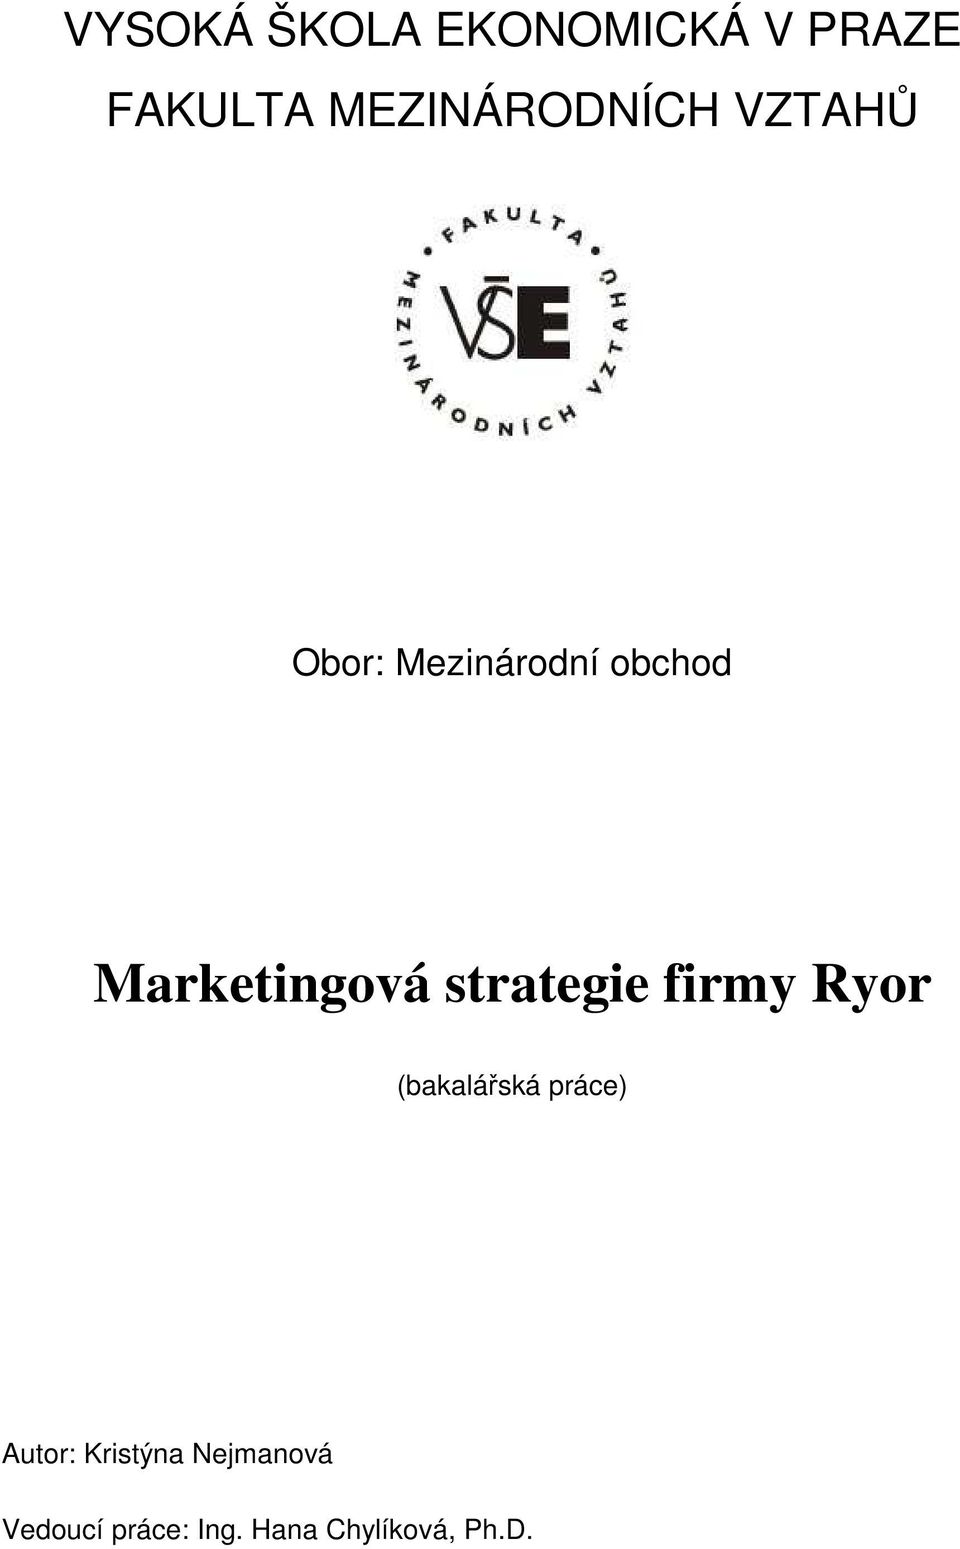 Marketingová strategie firmy Ryor (bakalářská